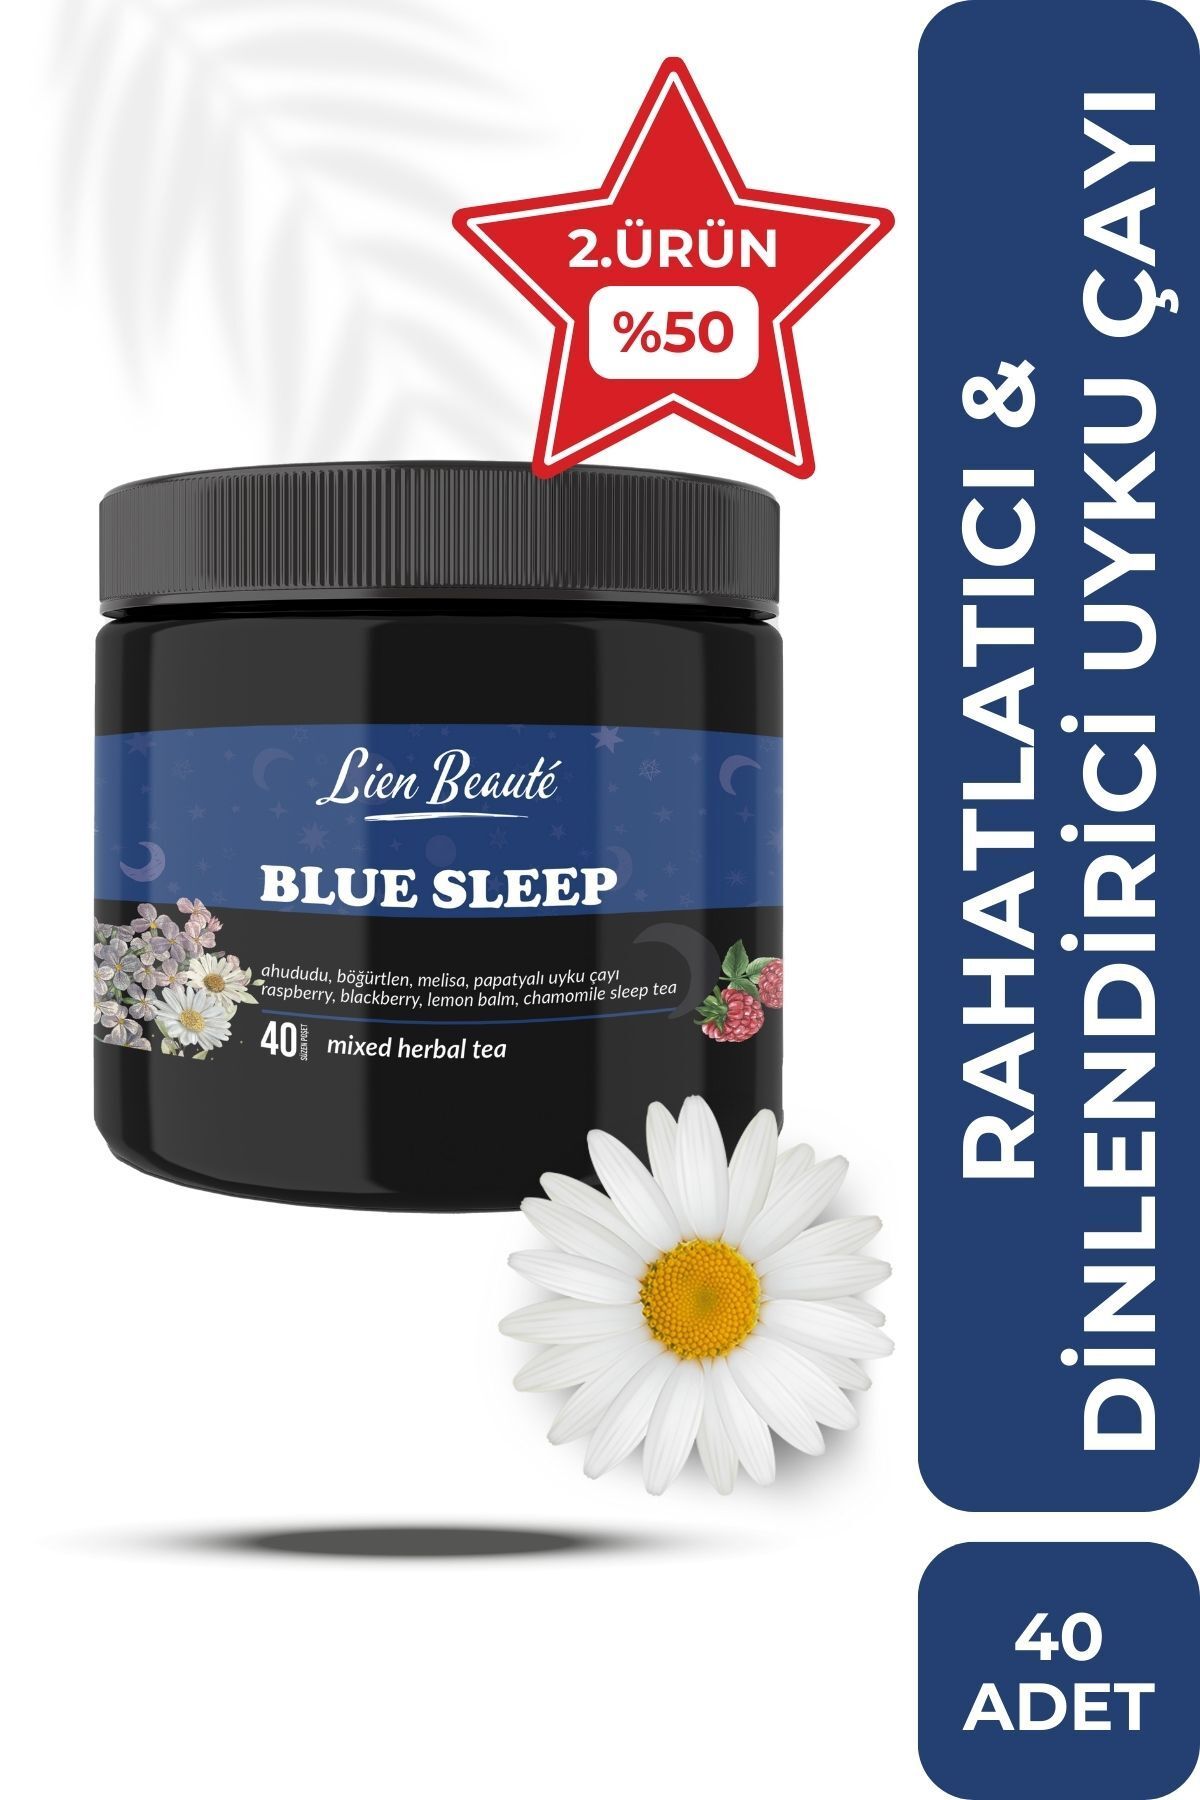 Lien Beaute Blue Sleep Rahatlama & Sakinleşmeye Yardımcı Uyku Öncesi Çay 40 Adet Süzen Poşet